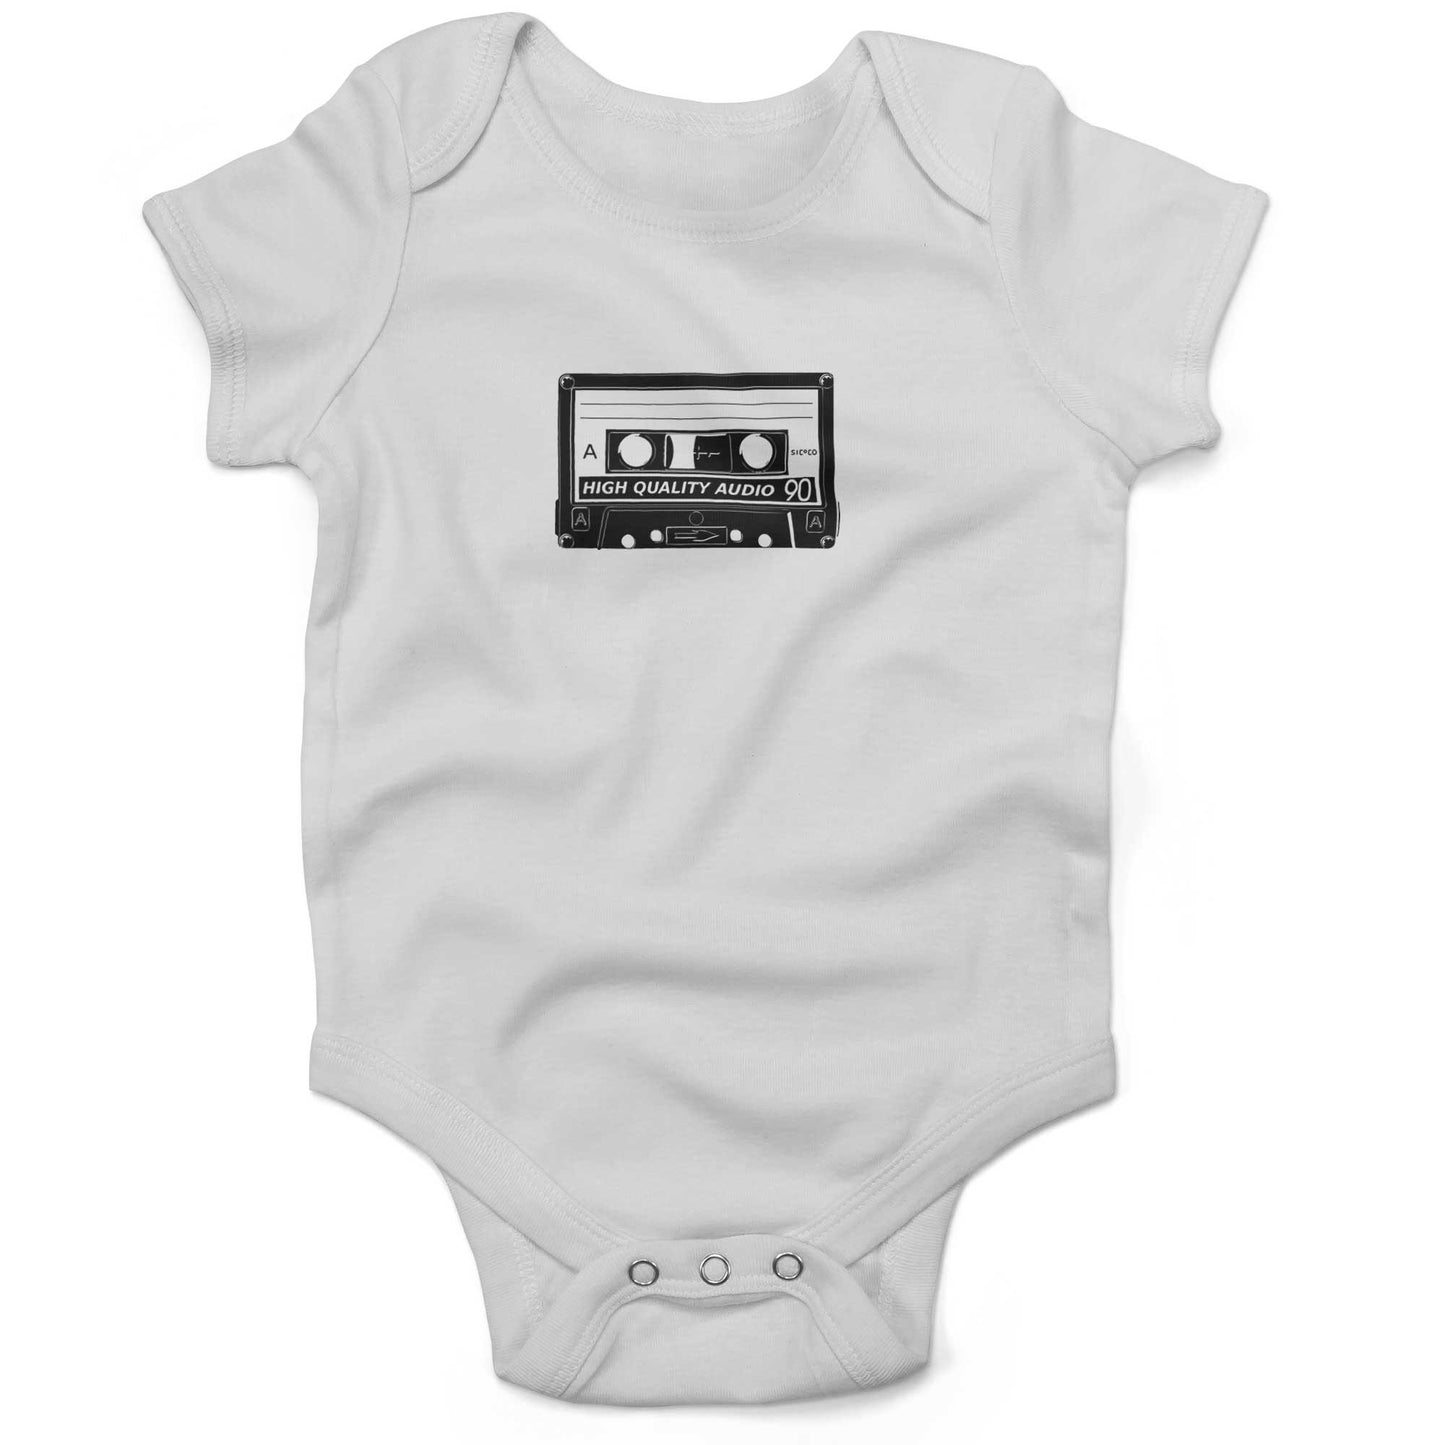 Cassette Tape Infant Bodysuit or Raglan Baby Tee-White-3-6 months